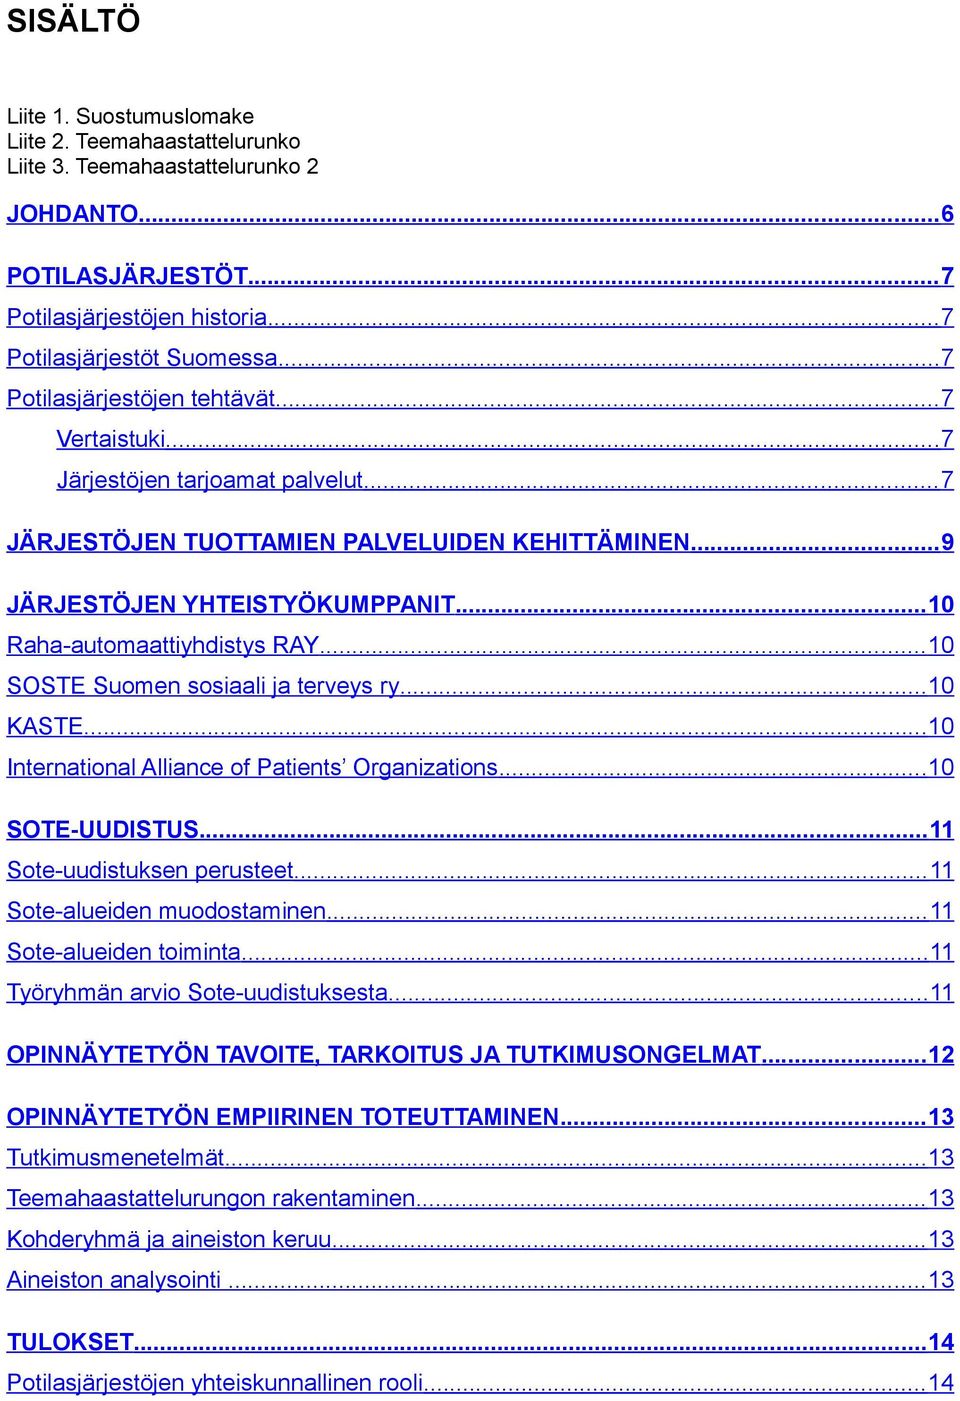 .. 10 Raha-automaattiyhdistys RAY... 10 SOSTE Suomen sosiaali ja terveys ry...10 KASTE...10 International Alliance of Patients Organizations...10 SOTE-UUDISTUS...11 Sote-uudistuksen perusteet.